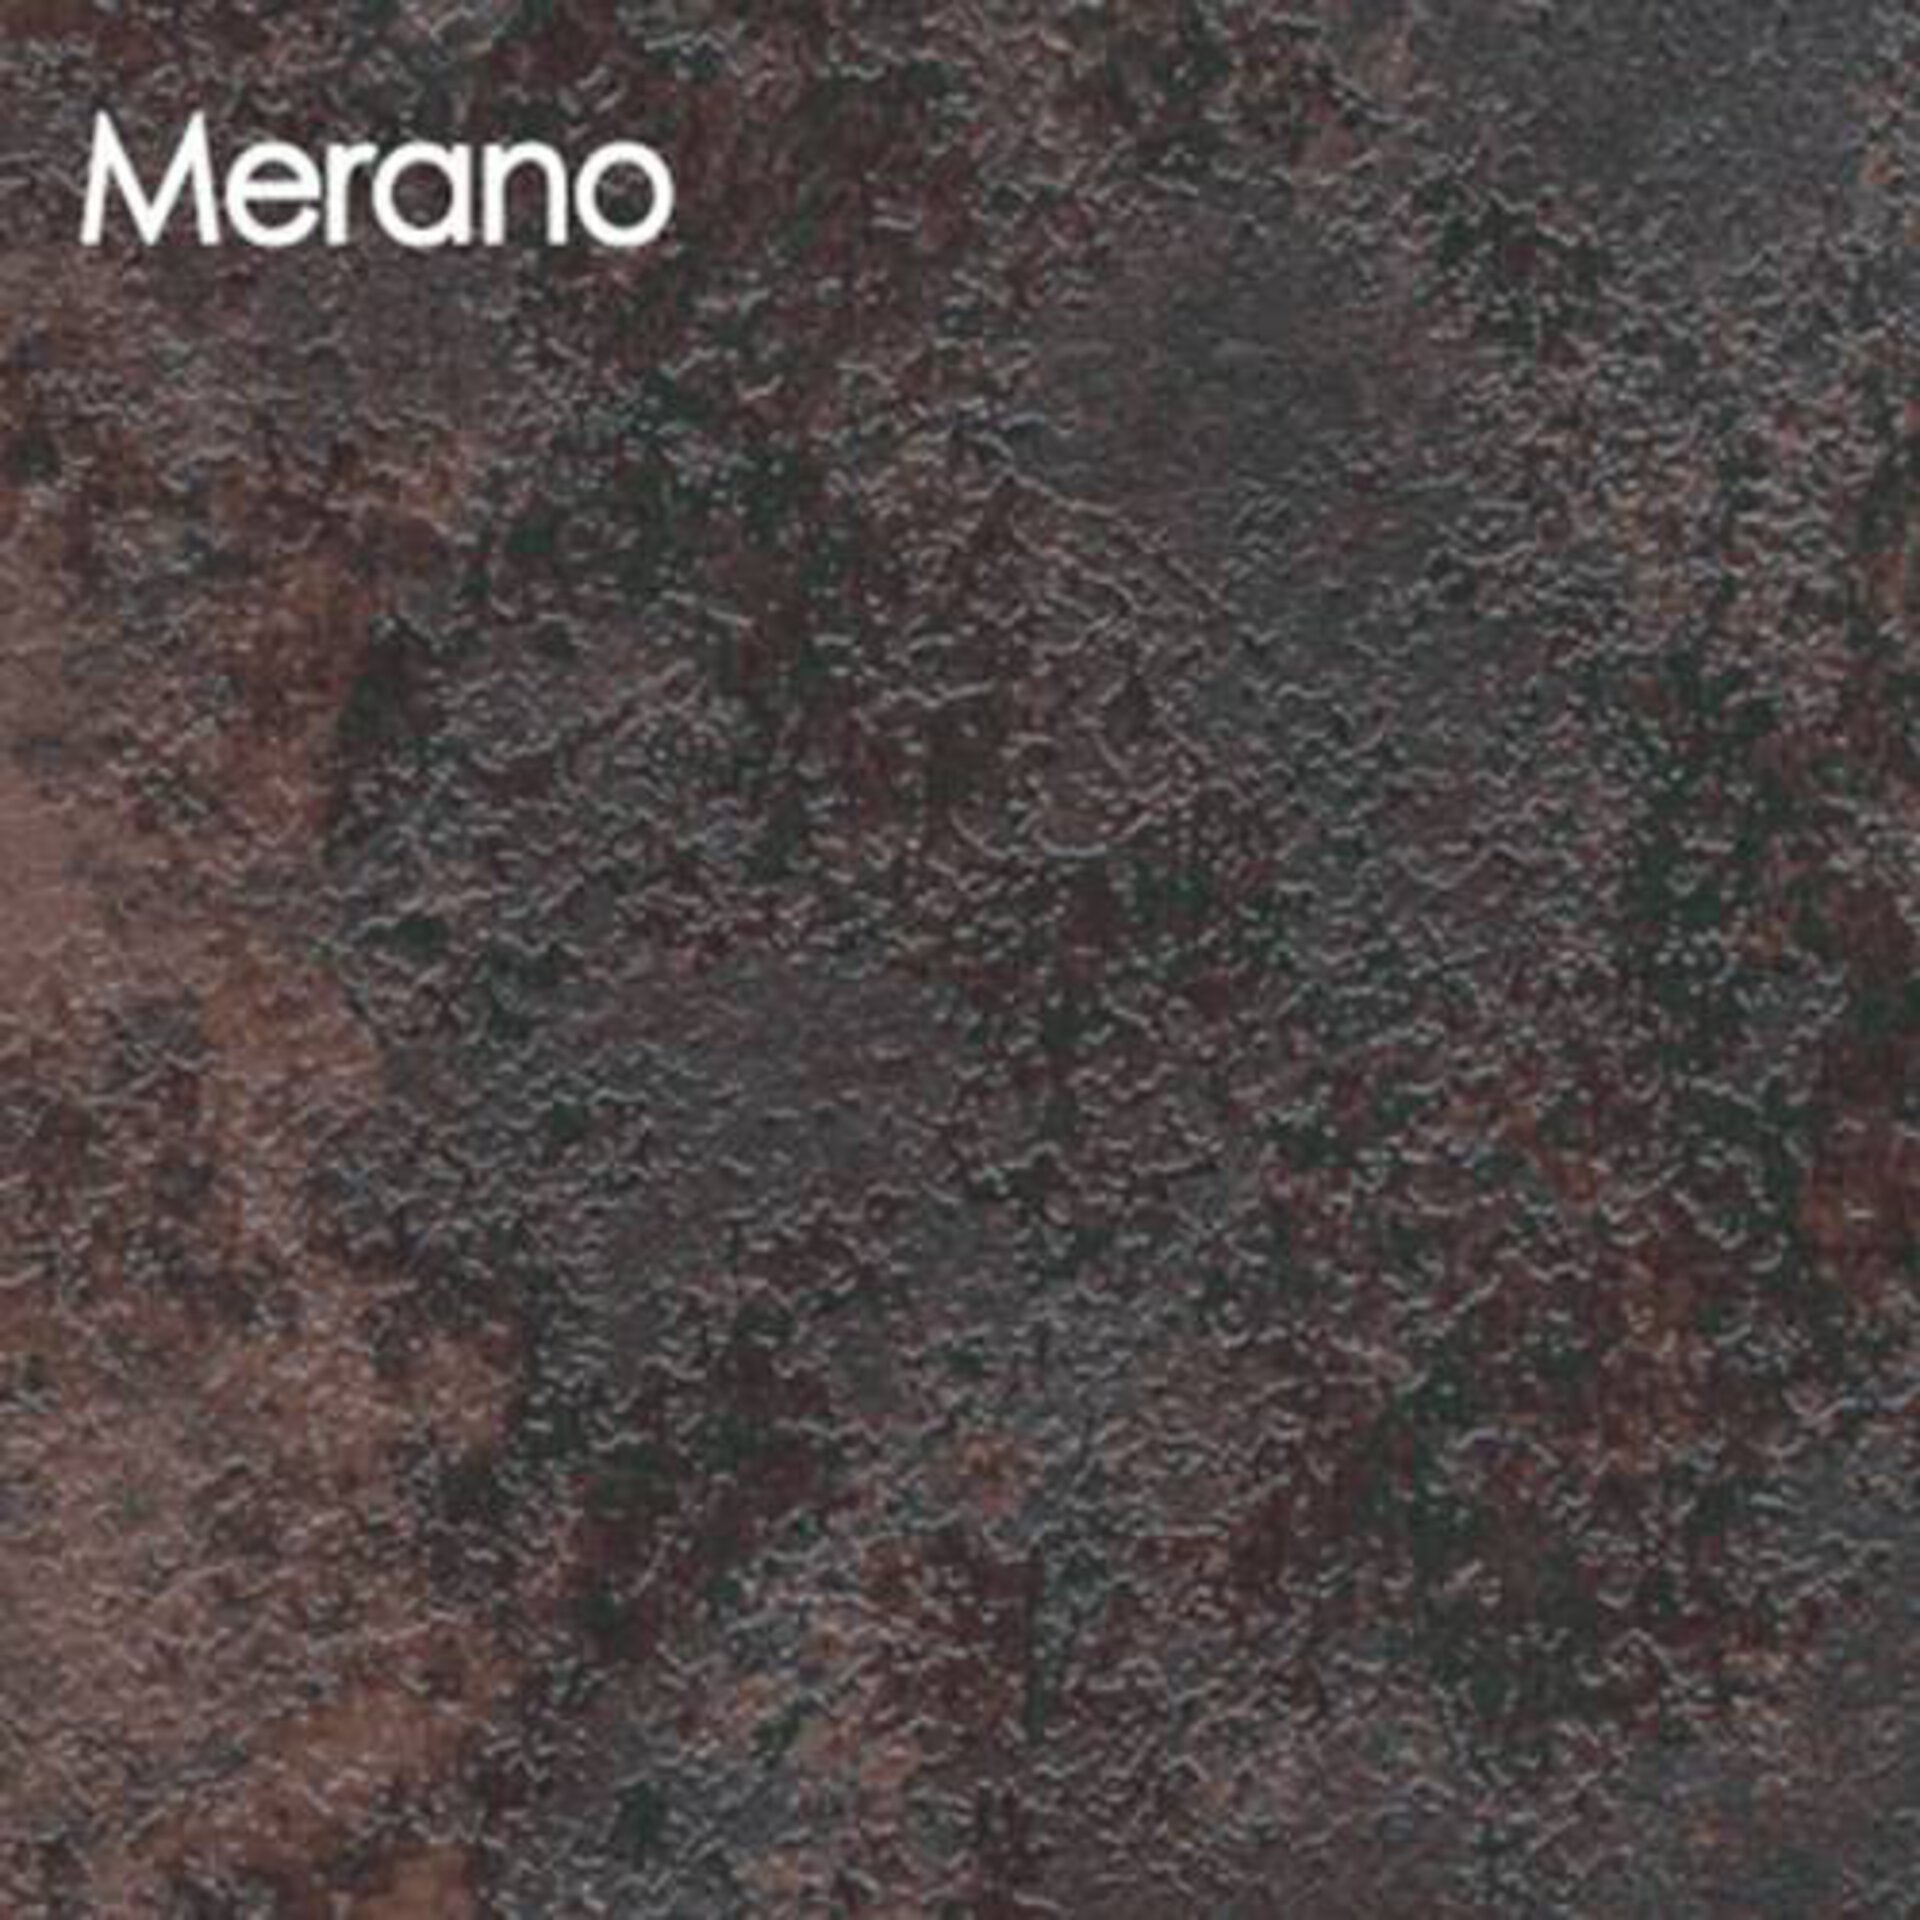 Arbeitsplatte aus Laminat in der rötlich braunen Steinoptik Merano.